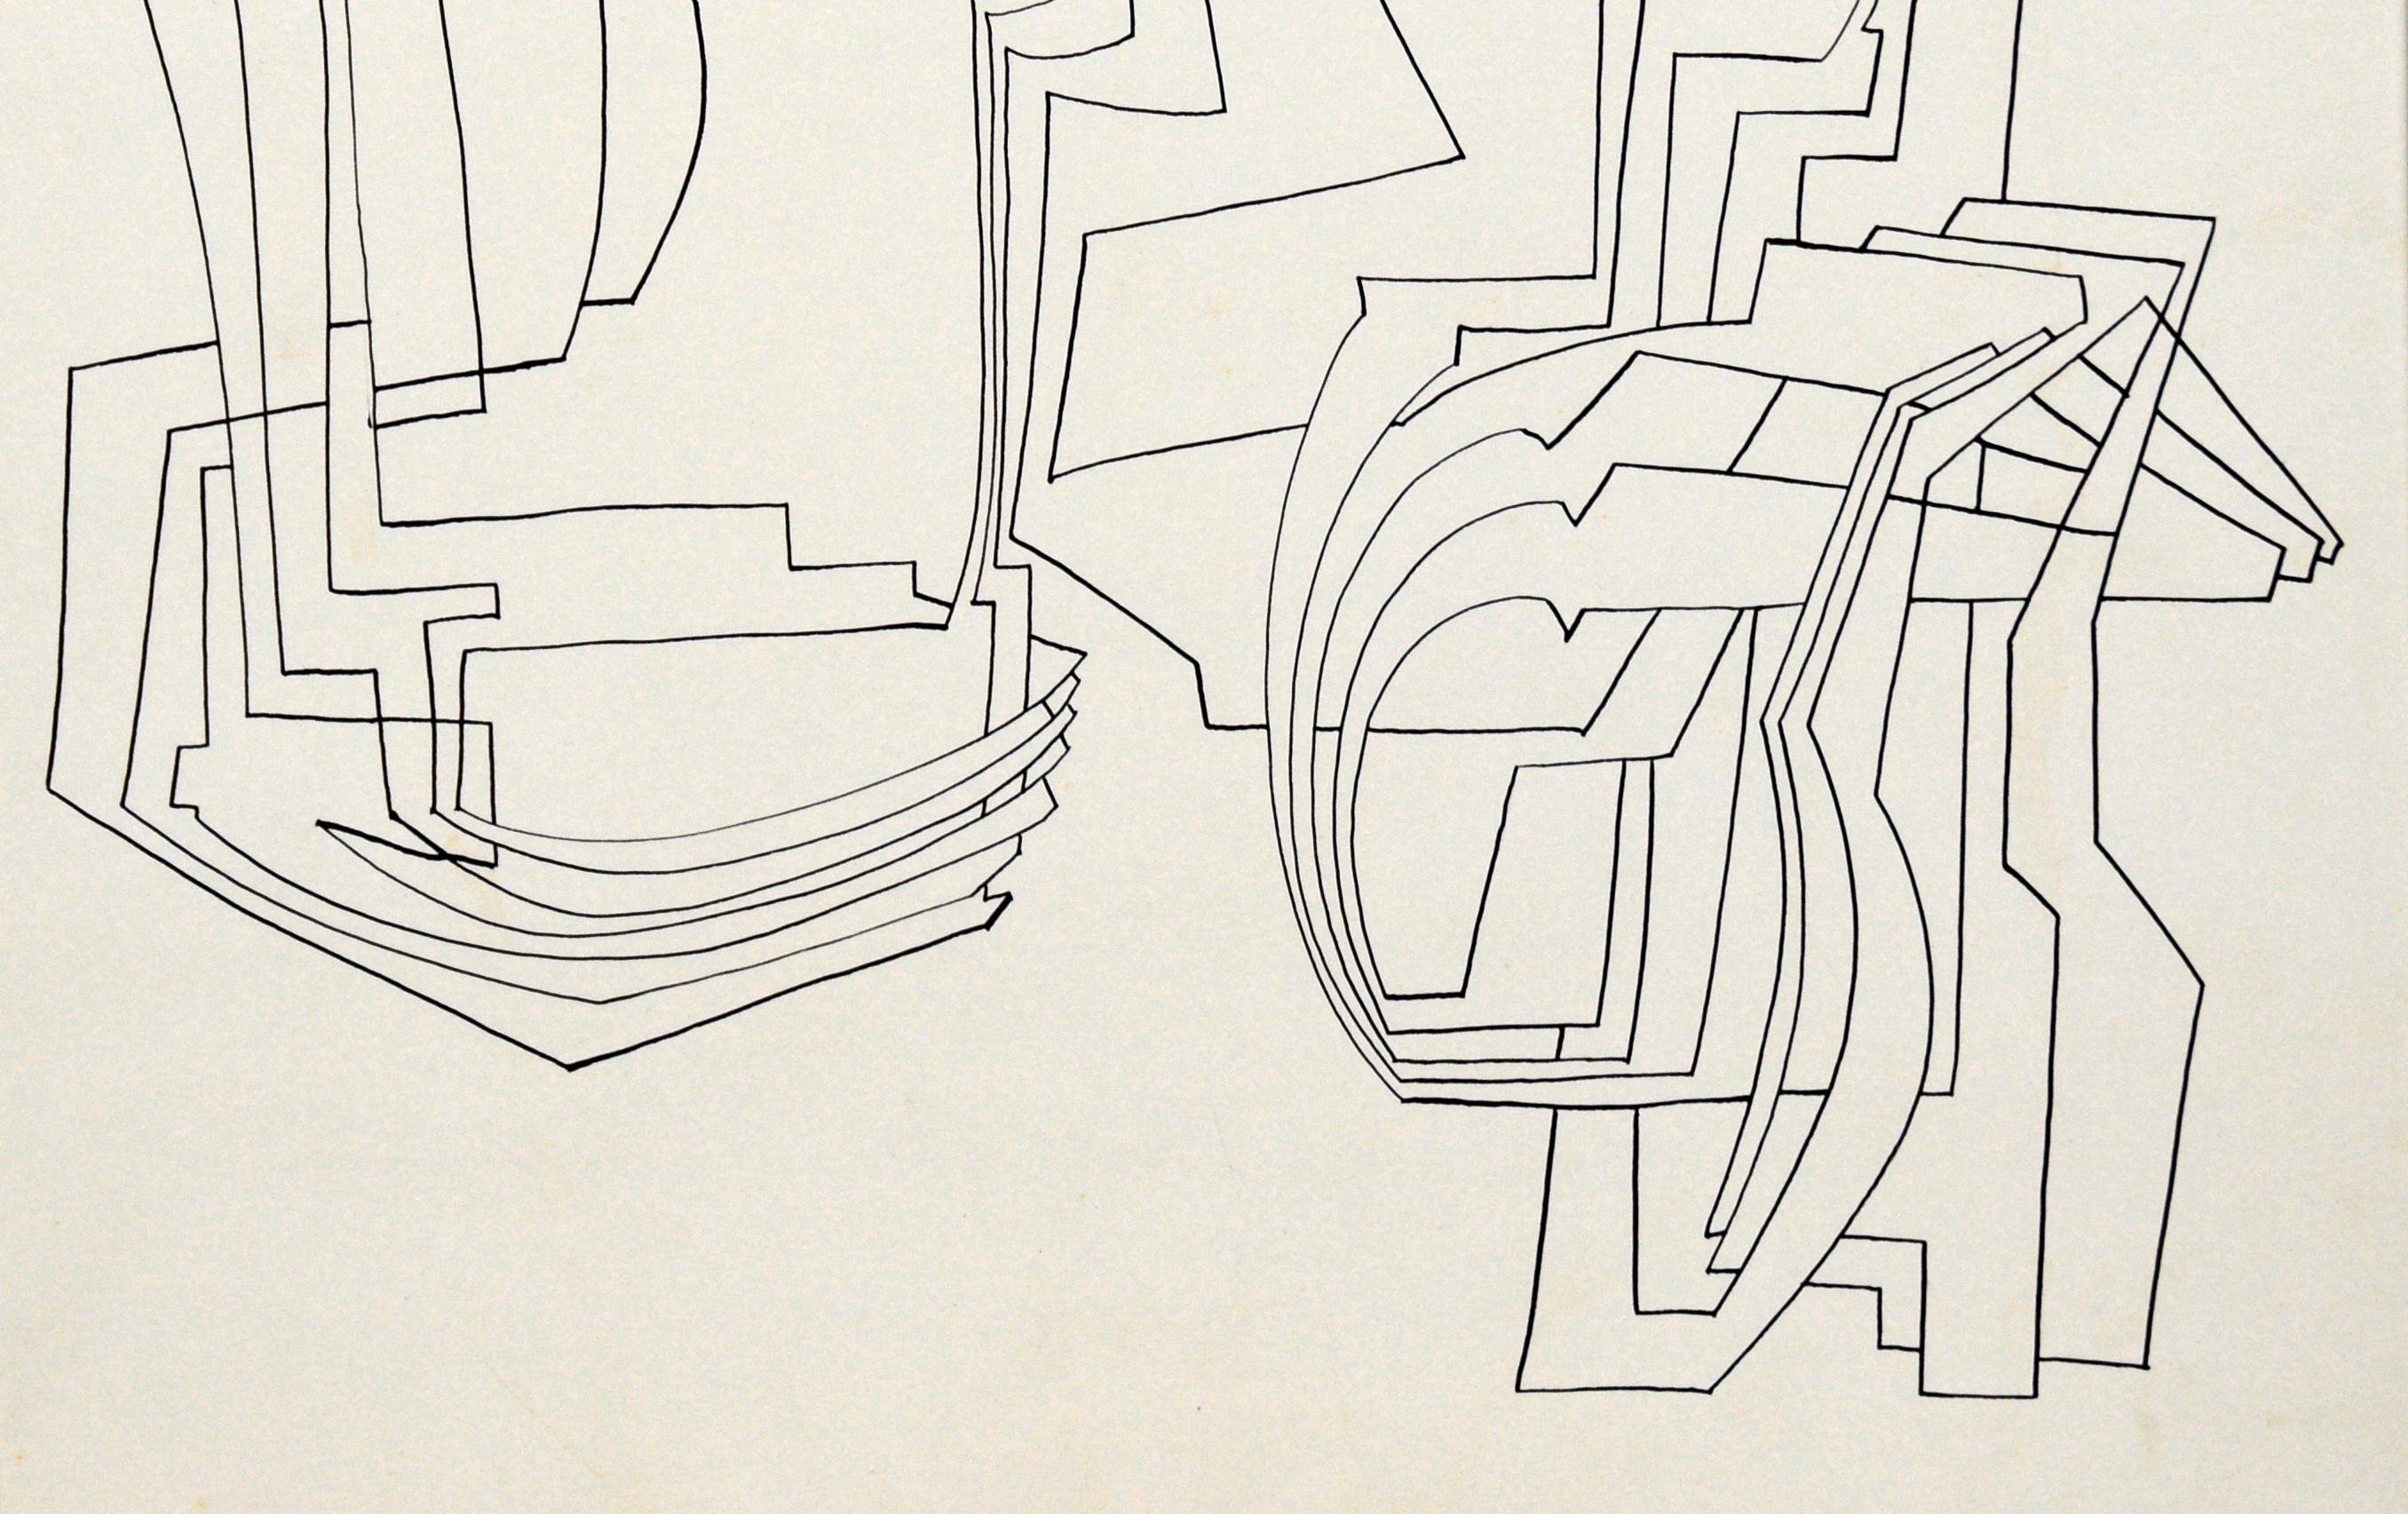 Art linéaire abstrait et géométrique à l'encre sur papier de Geraldine Heib

Dans cette ligne abstraite de Jerry O'Day (Américain, 1912), les lignes se croisent et se superposent de manière droite et arrondie, ce qui donne une impression de